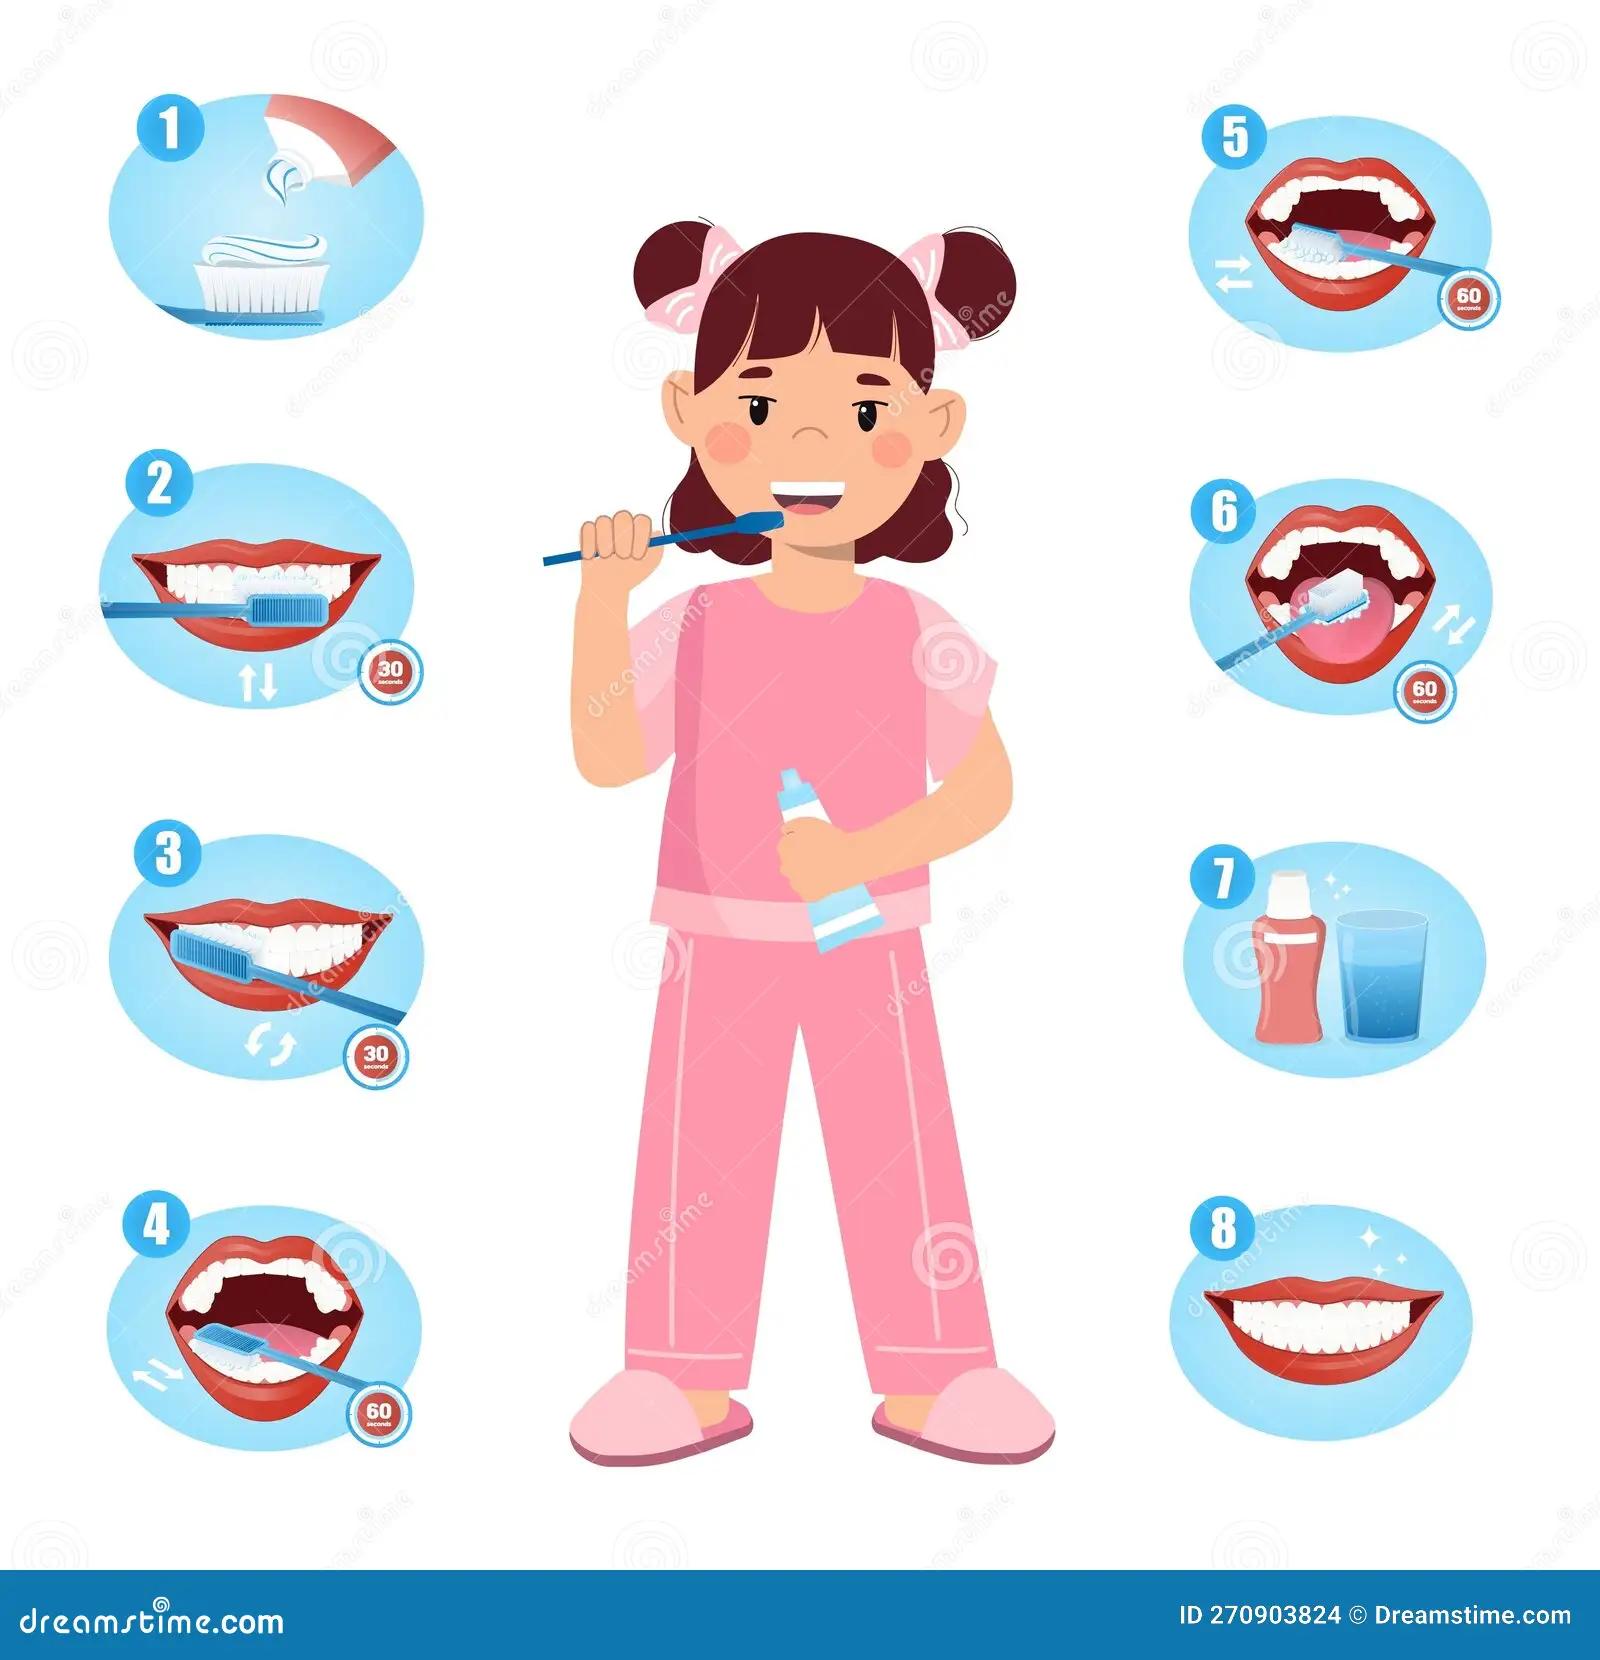 pasos para cepillarse los dientes para niños - Cómo cepillarse los dientes en 4 pasos